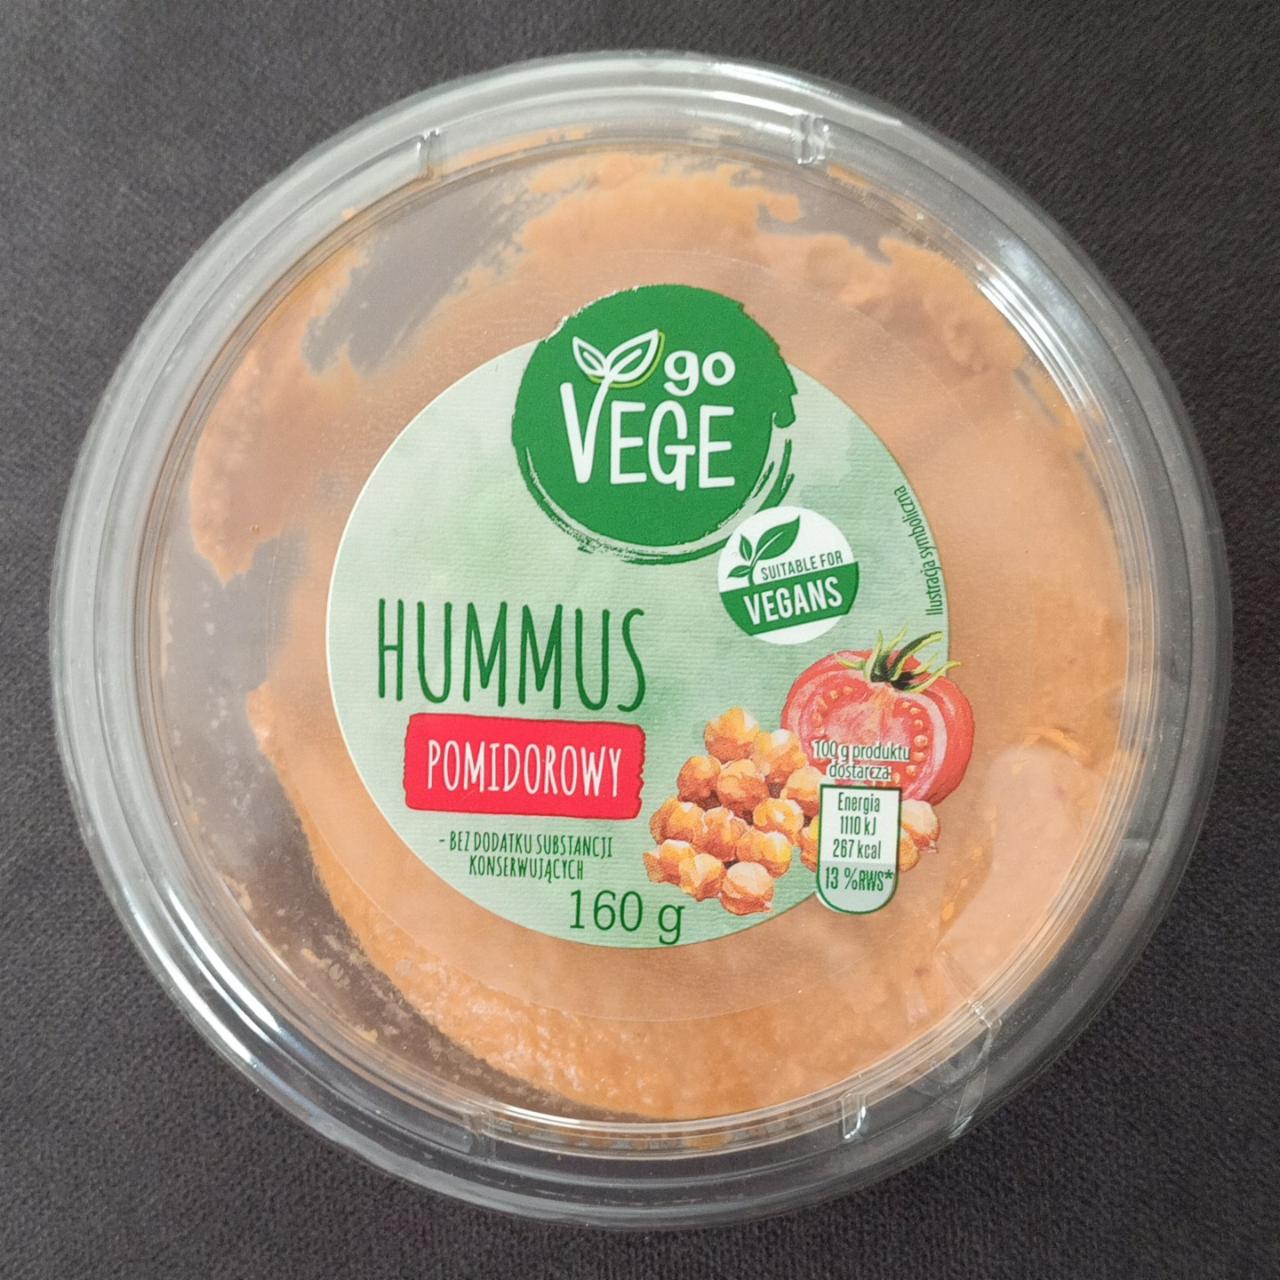 Zdjęcia - hummus pomidorowy go VEGE